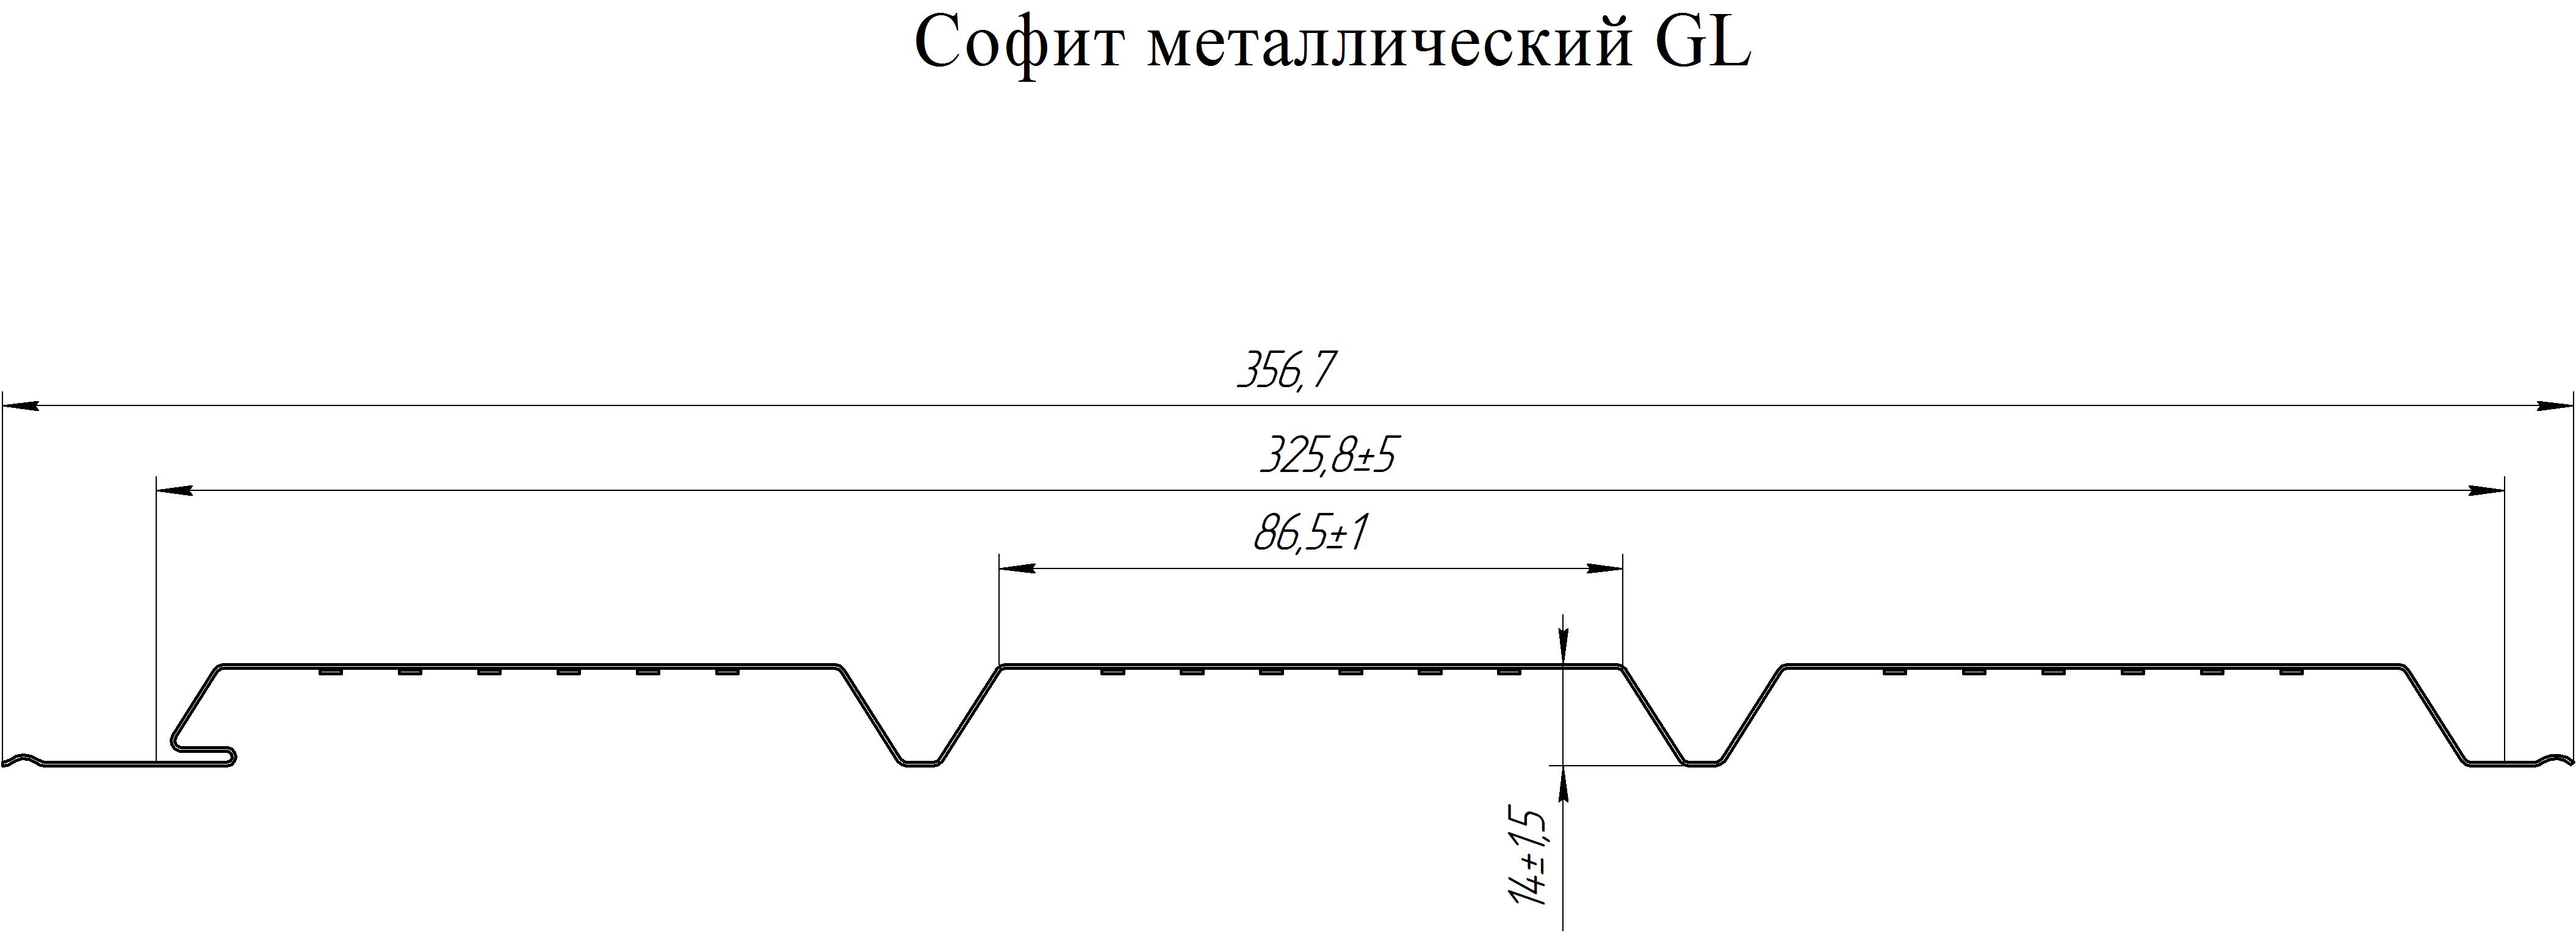 chertezhsofitgl1-copy - Софит металл GL без перфорации РЕ 0,4 мм RAL 1014 слоновая кость